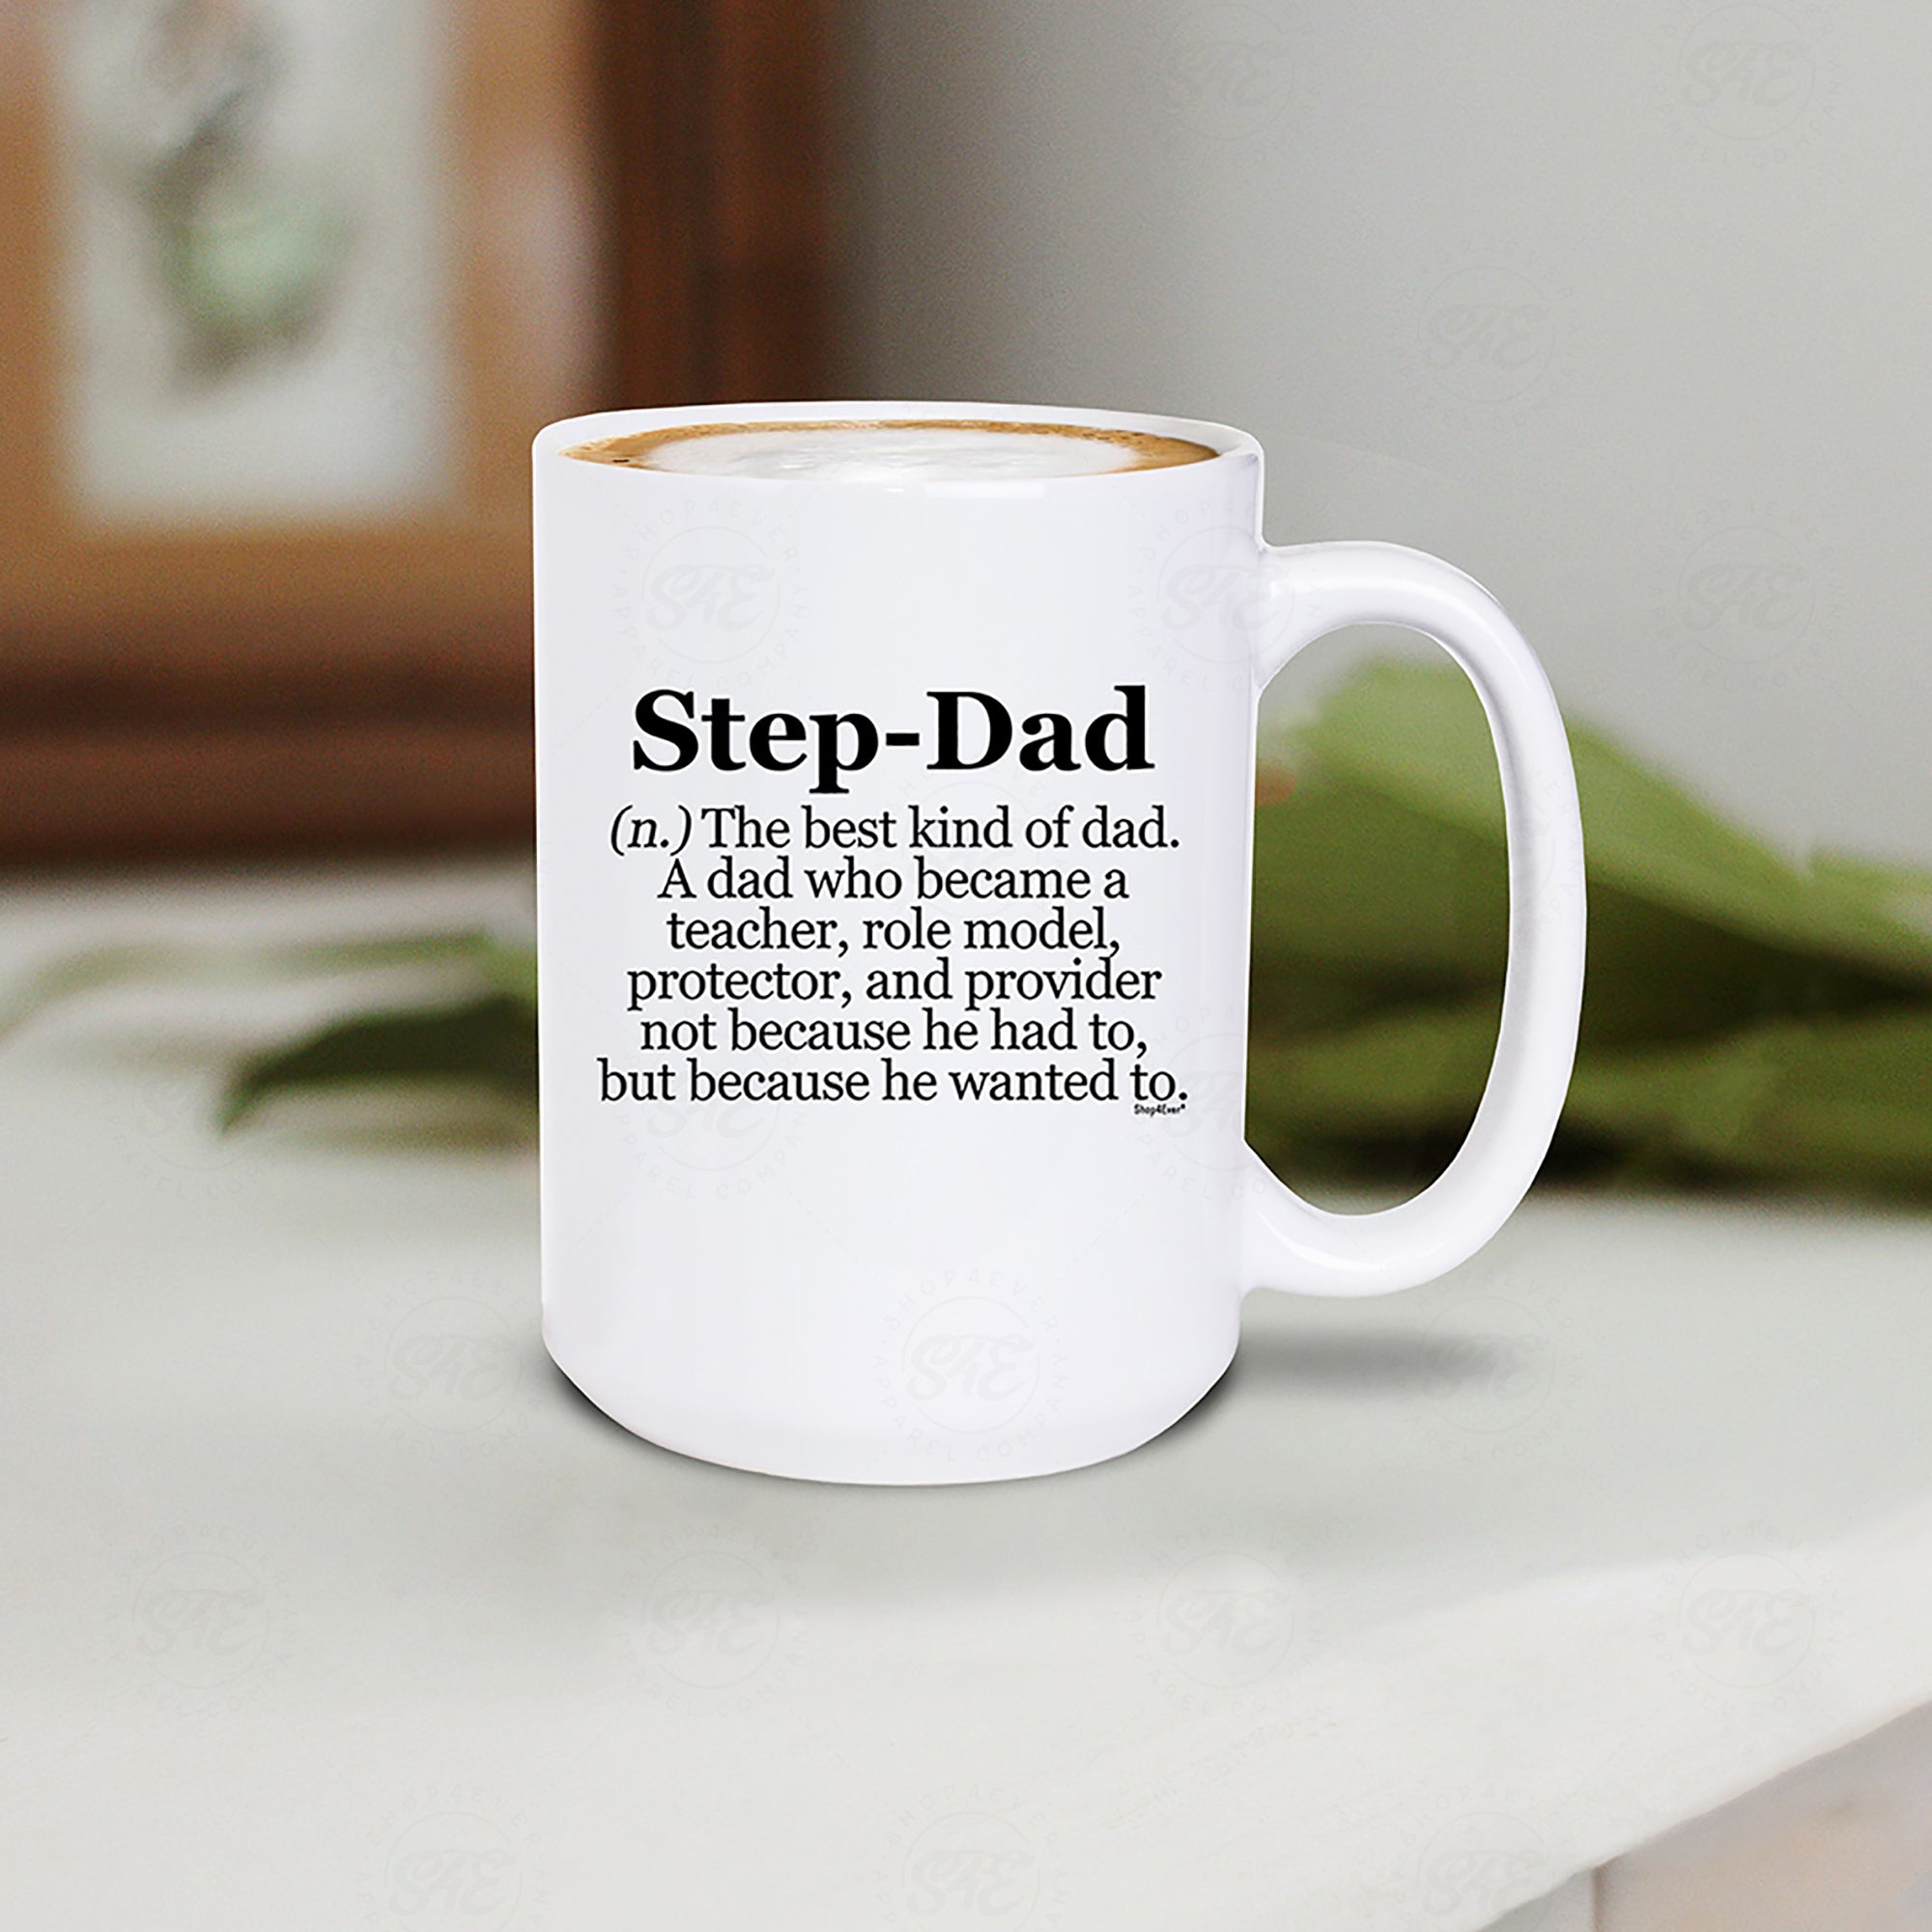 Step-Dad Definition Ceramic Coffee Mug 15 oz